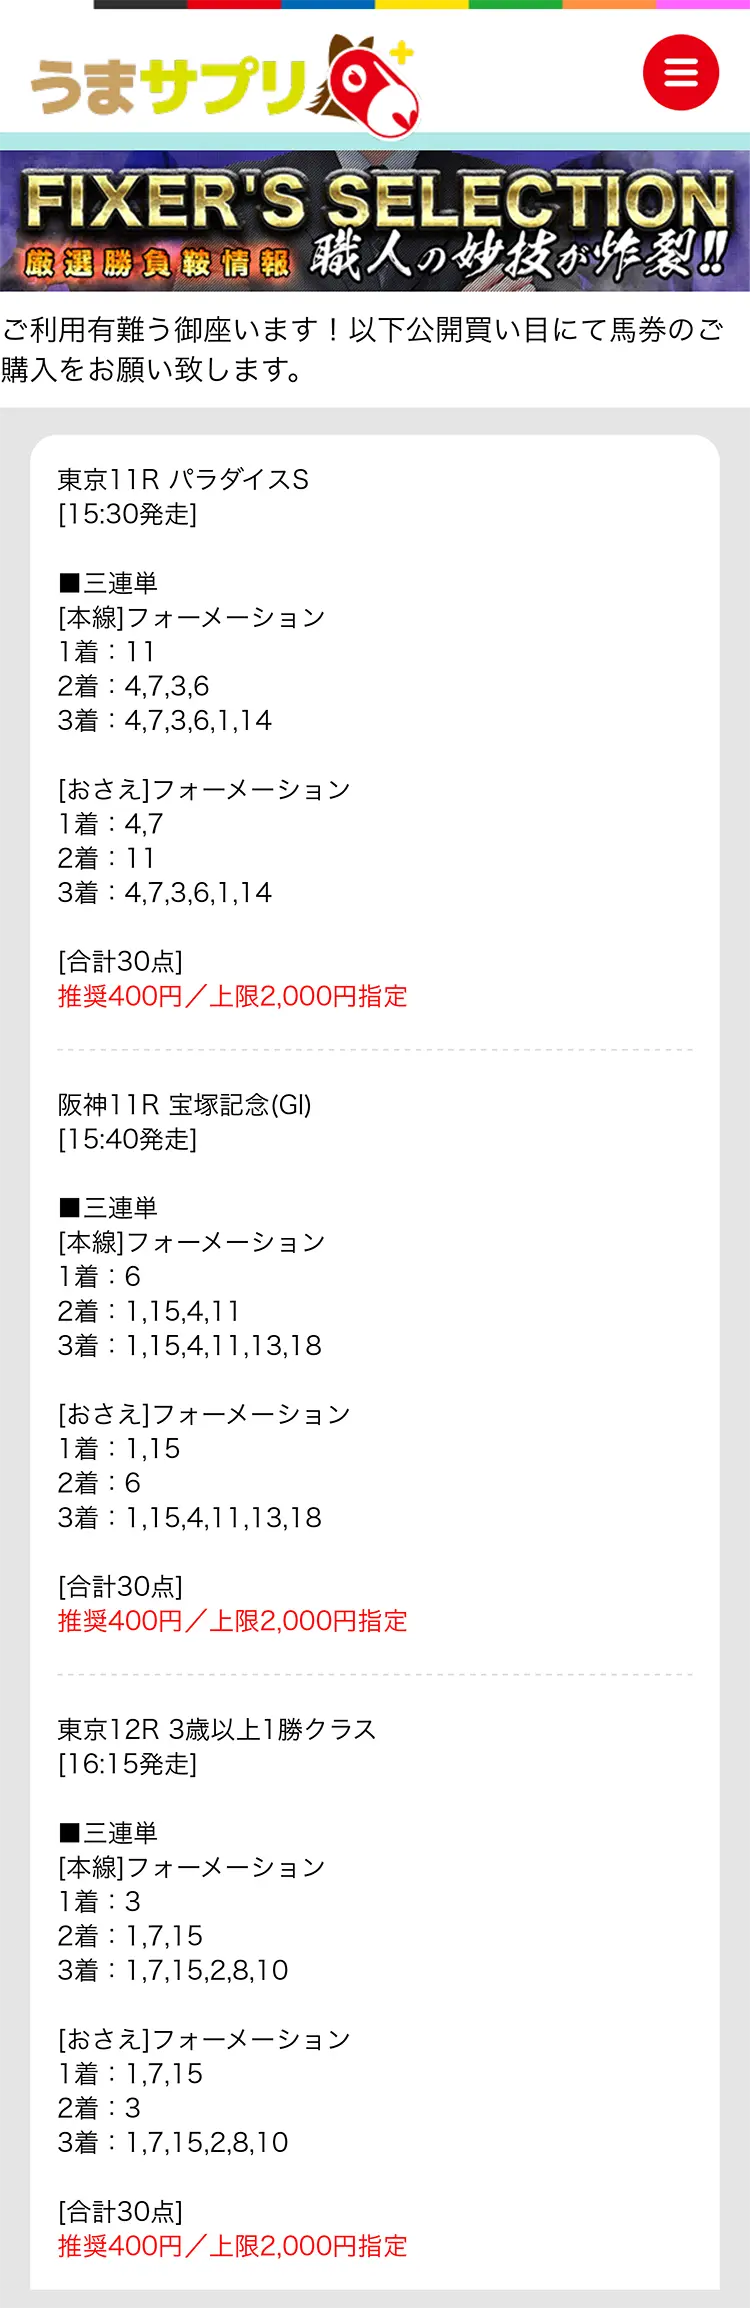 うまサプリ6月26日(日)『FIXER'S SELECTION東京』買い目